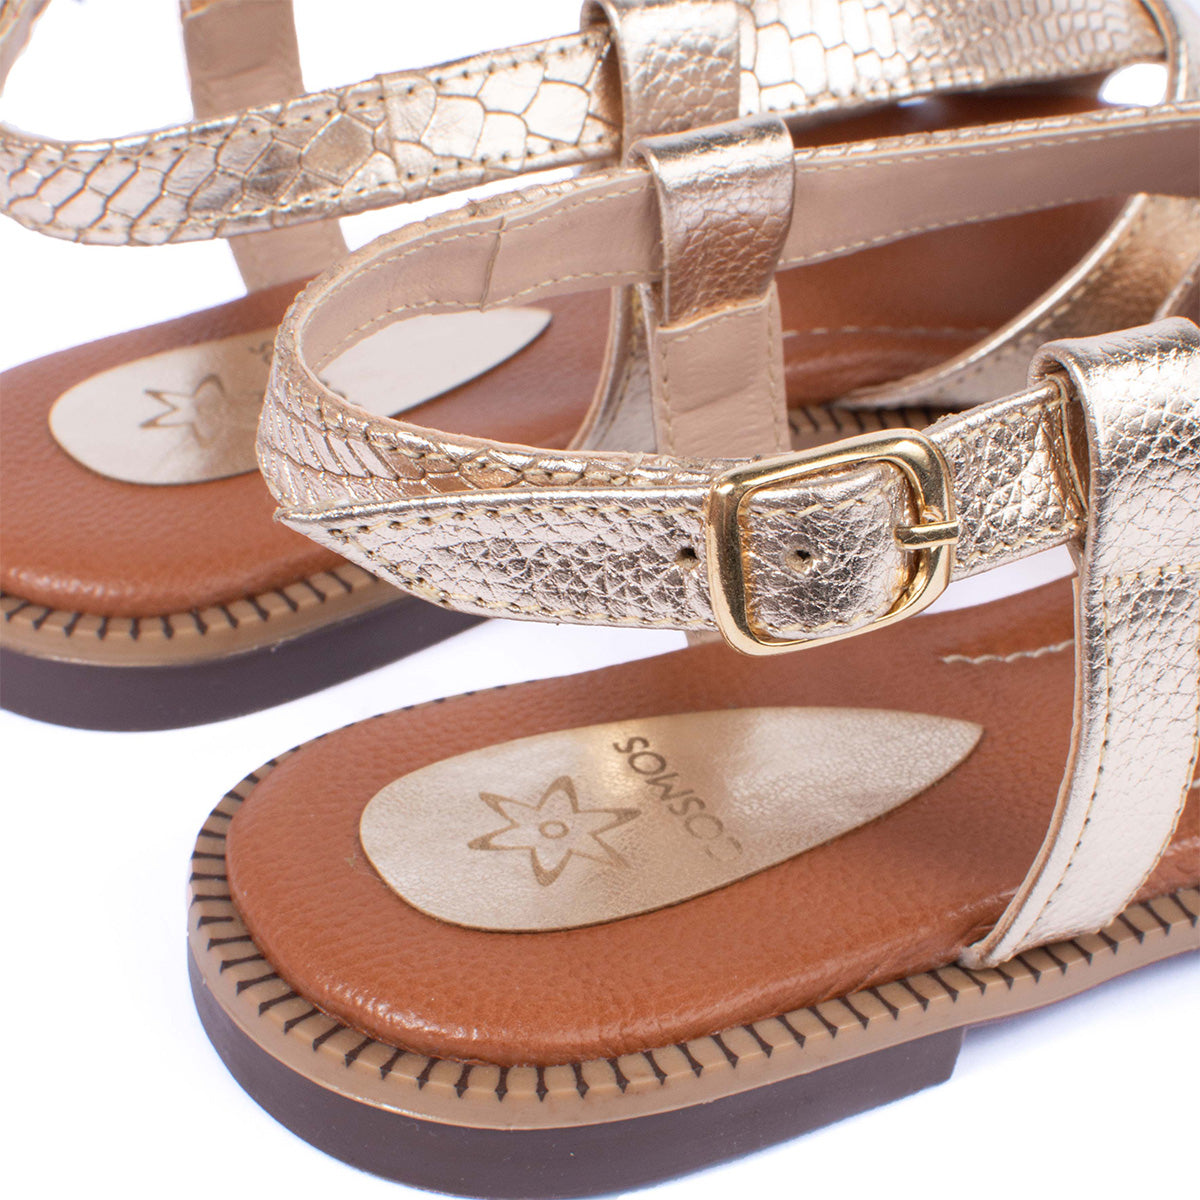 Sandalias planas en cuero color dorado con correas cruzadas y textura 104077